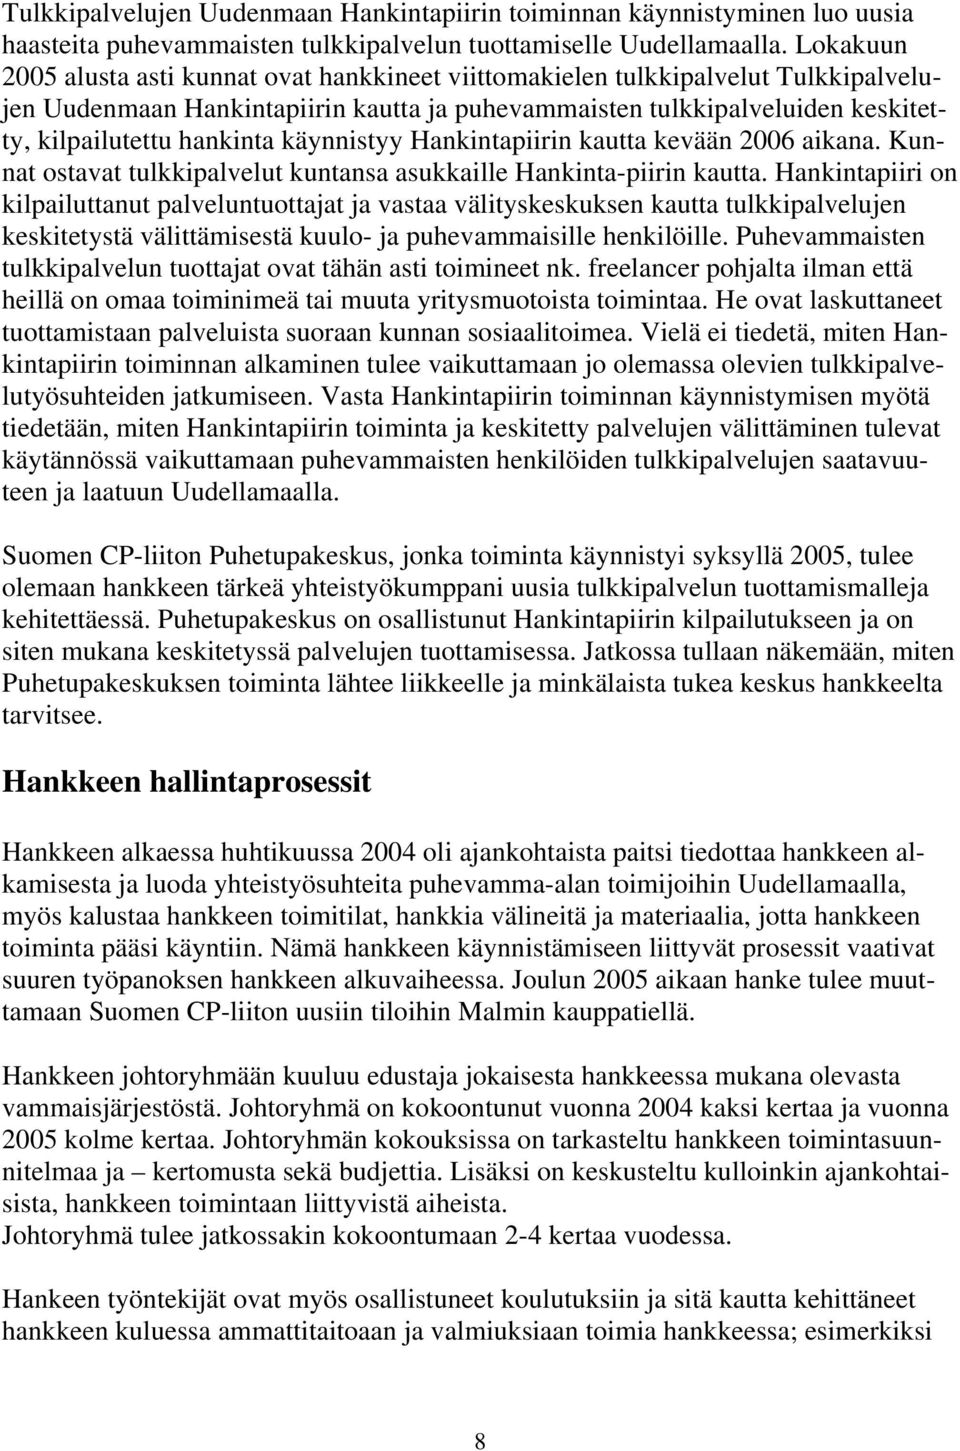 käynnistyy Hankintapiirin kautta kevään 2006 aikana. Kunnat ostavat tulkkipalvelut kuntansa asukkaille Hankinta-piirin kautta.